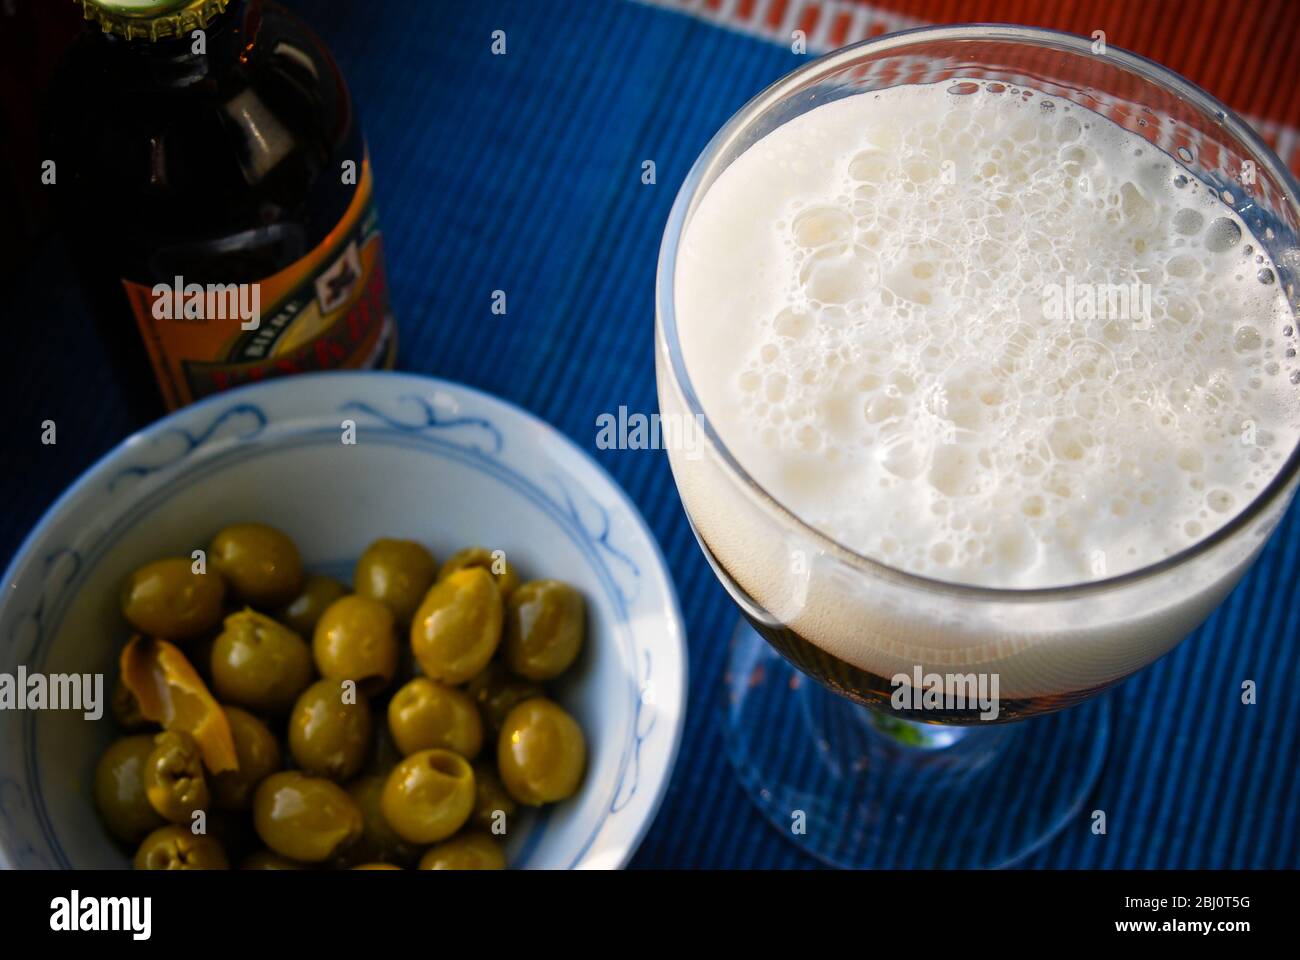 Ein Glas Bier mit einem guten Schaumkessel und einer Schale Oliven - Stockfoto